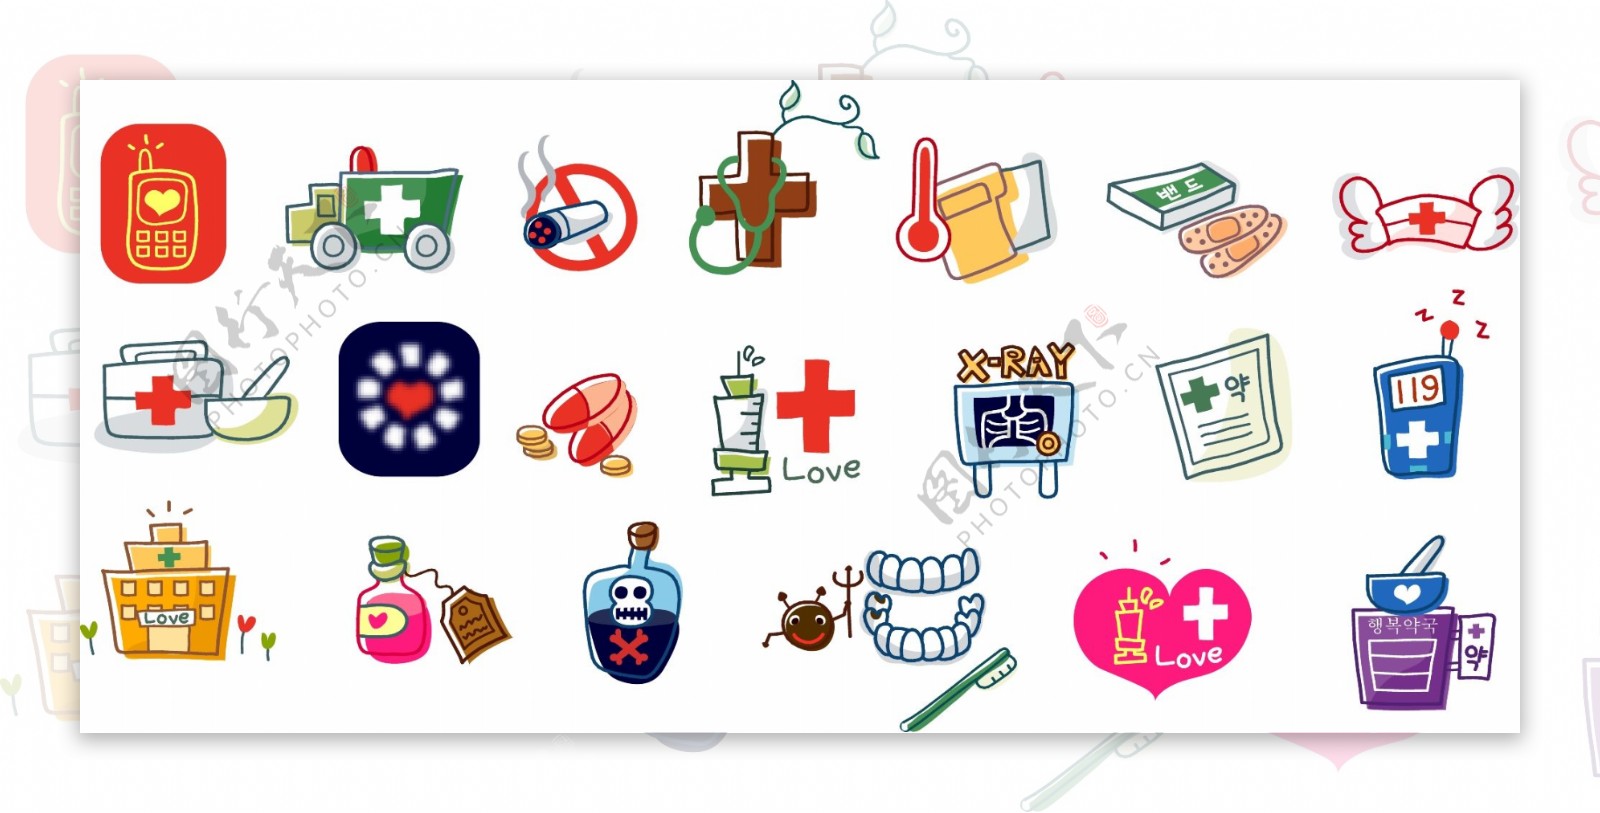 可爱小标志图案网站图标网站素材矢量素材矢量图片HanMaker韩国设计素材库